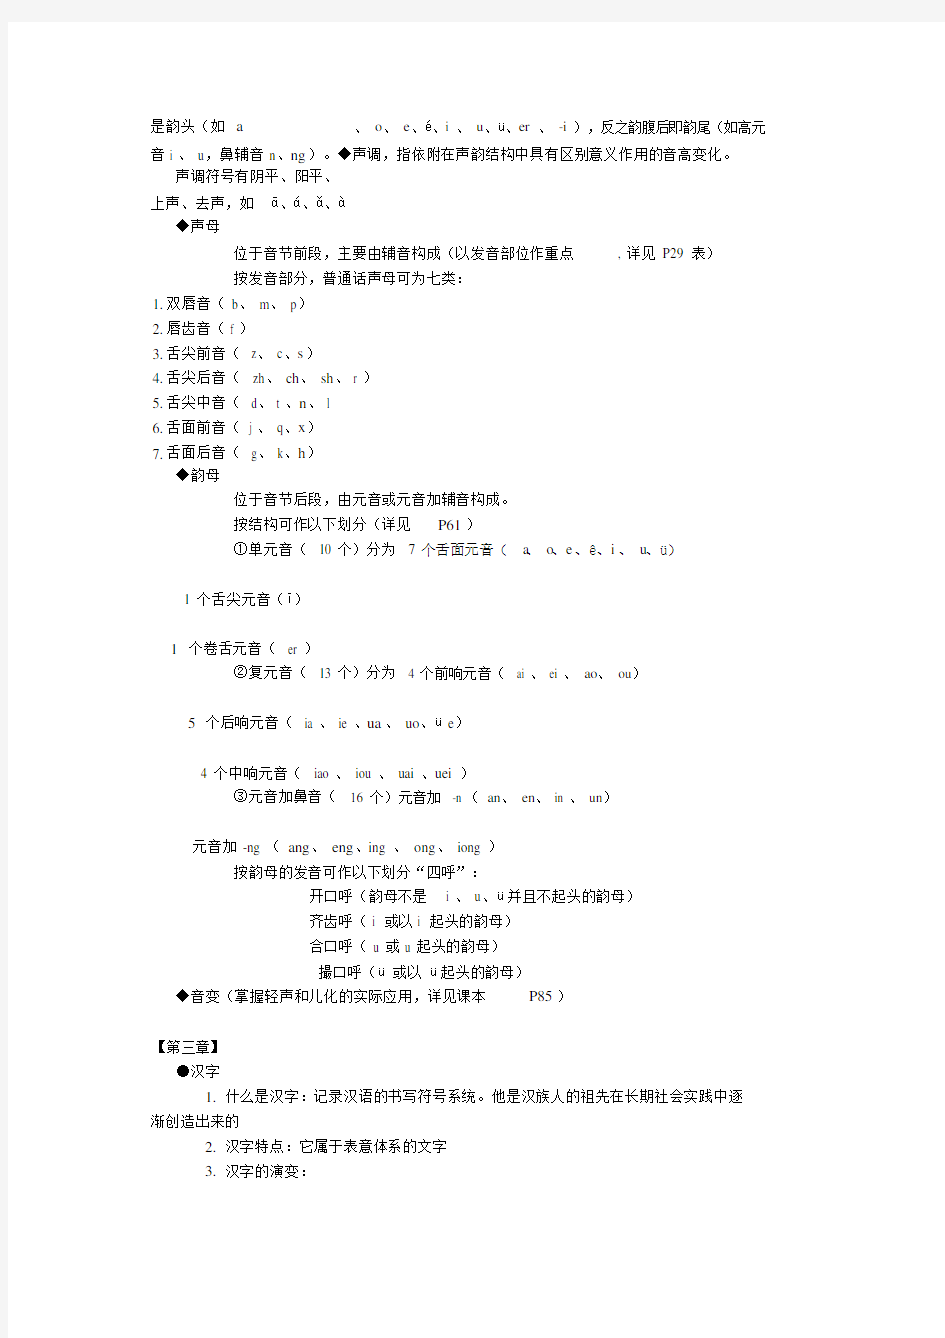 《现代汉语》上册各种考点归纳(20210109090616)